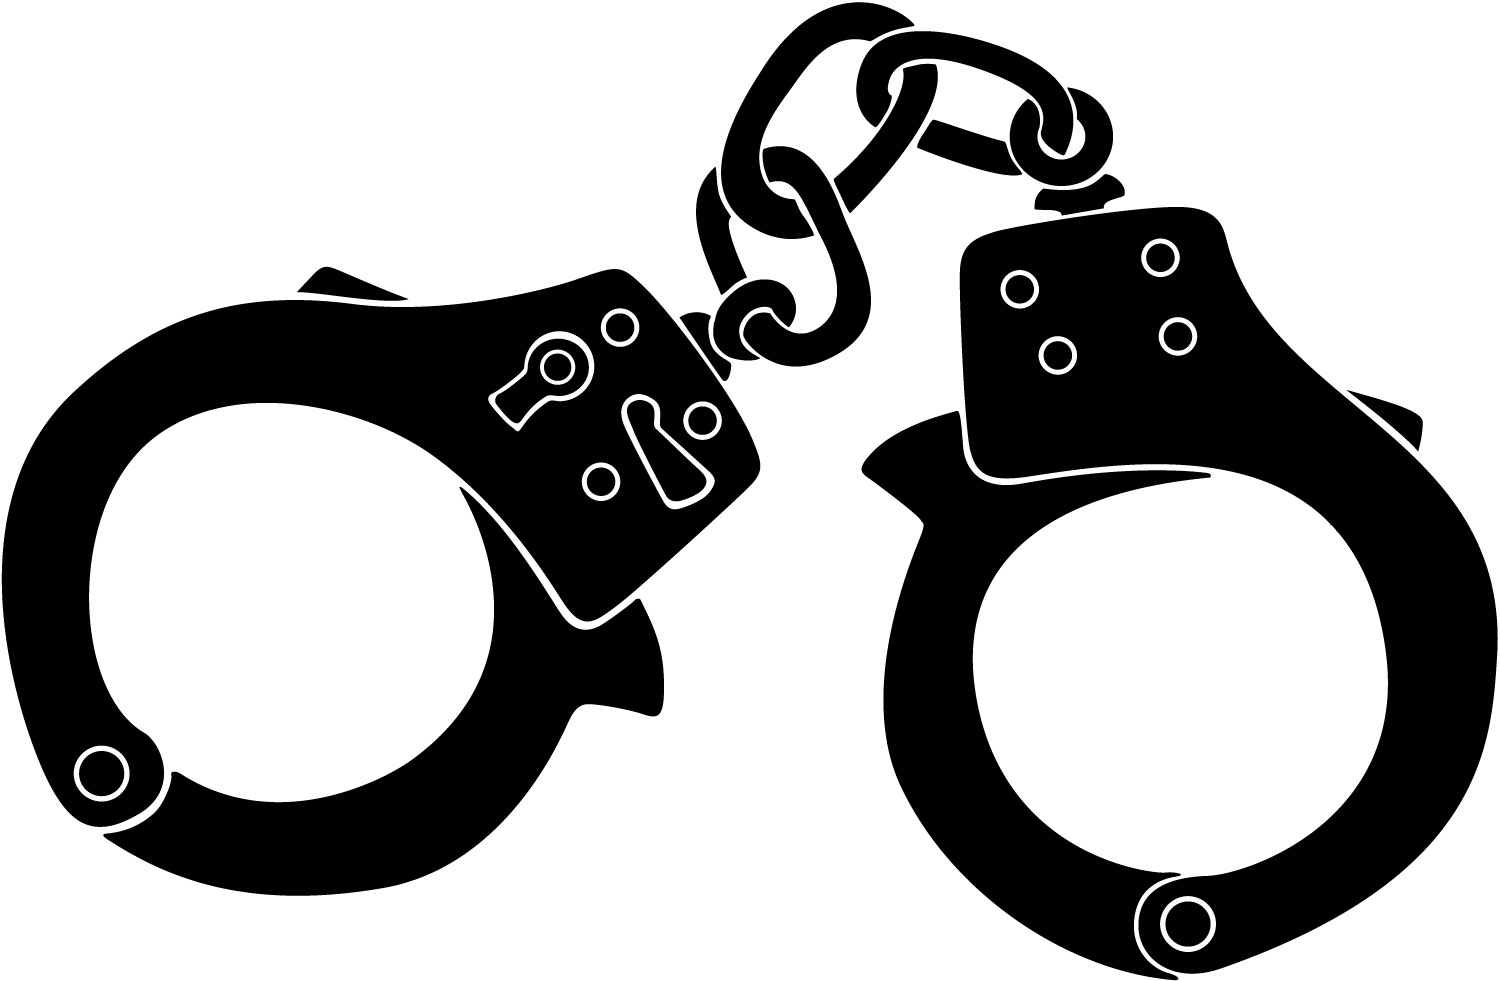 Handcuffs cliparts